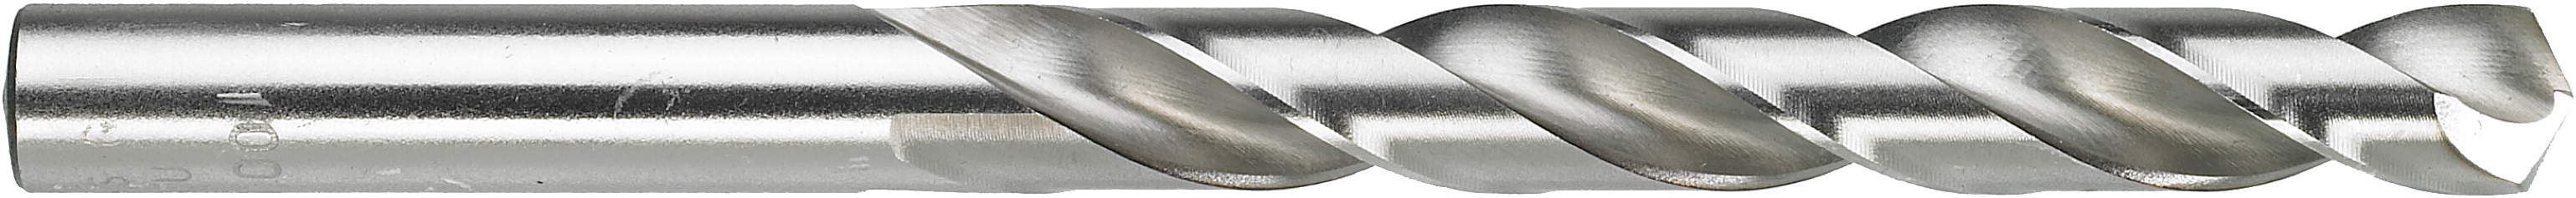 TRIUSO Stahlbohrer HSS-G 1,0 mm DIN 338 2 St. 